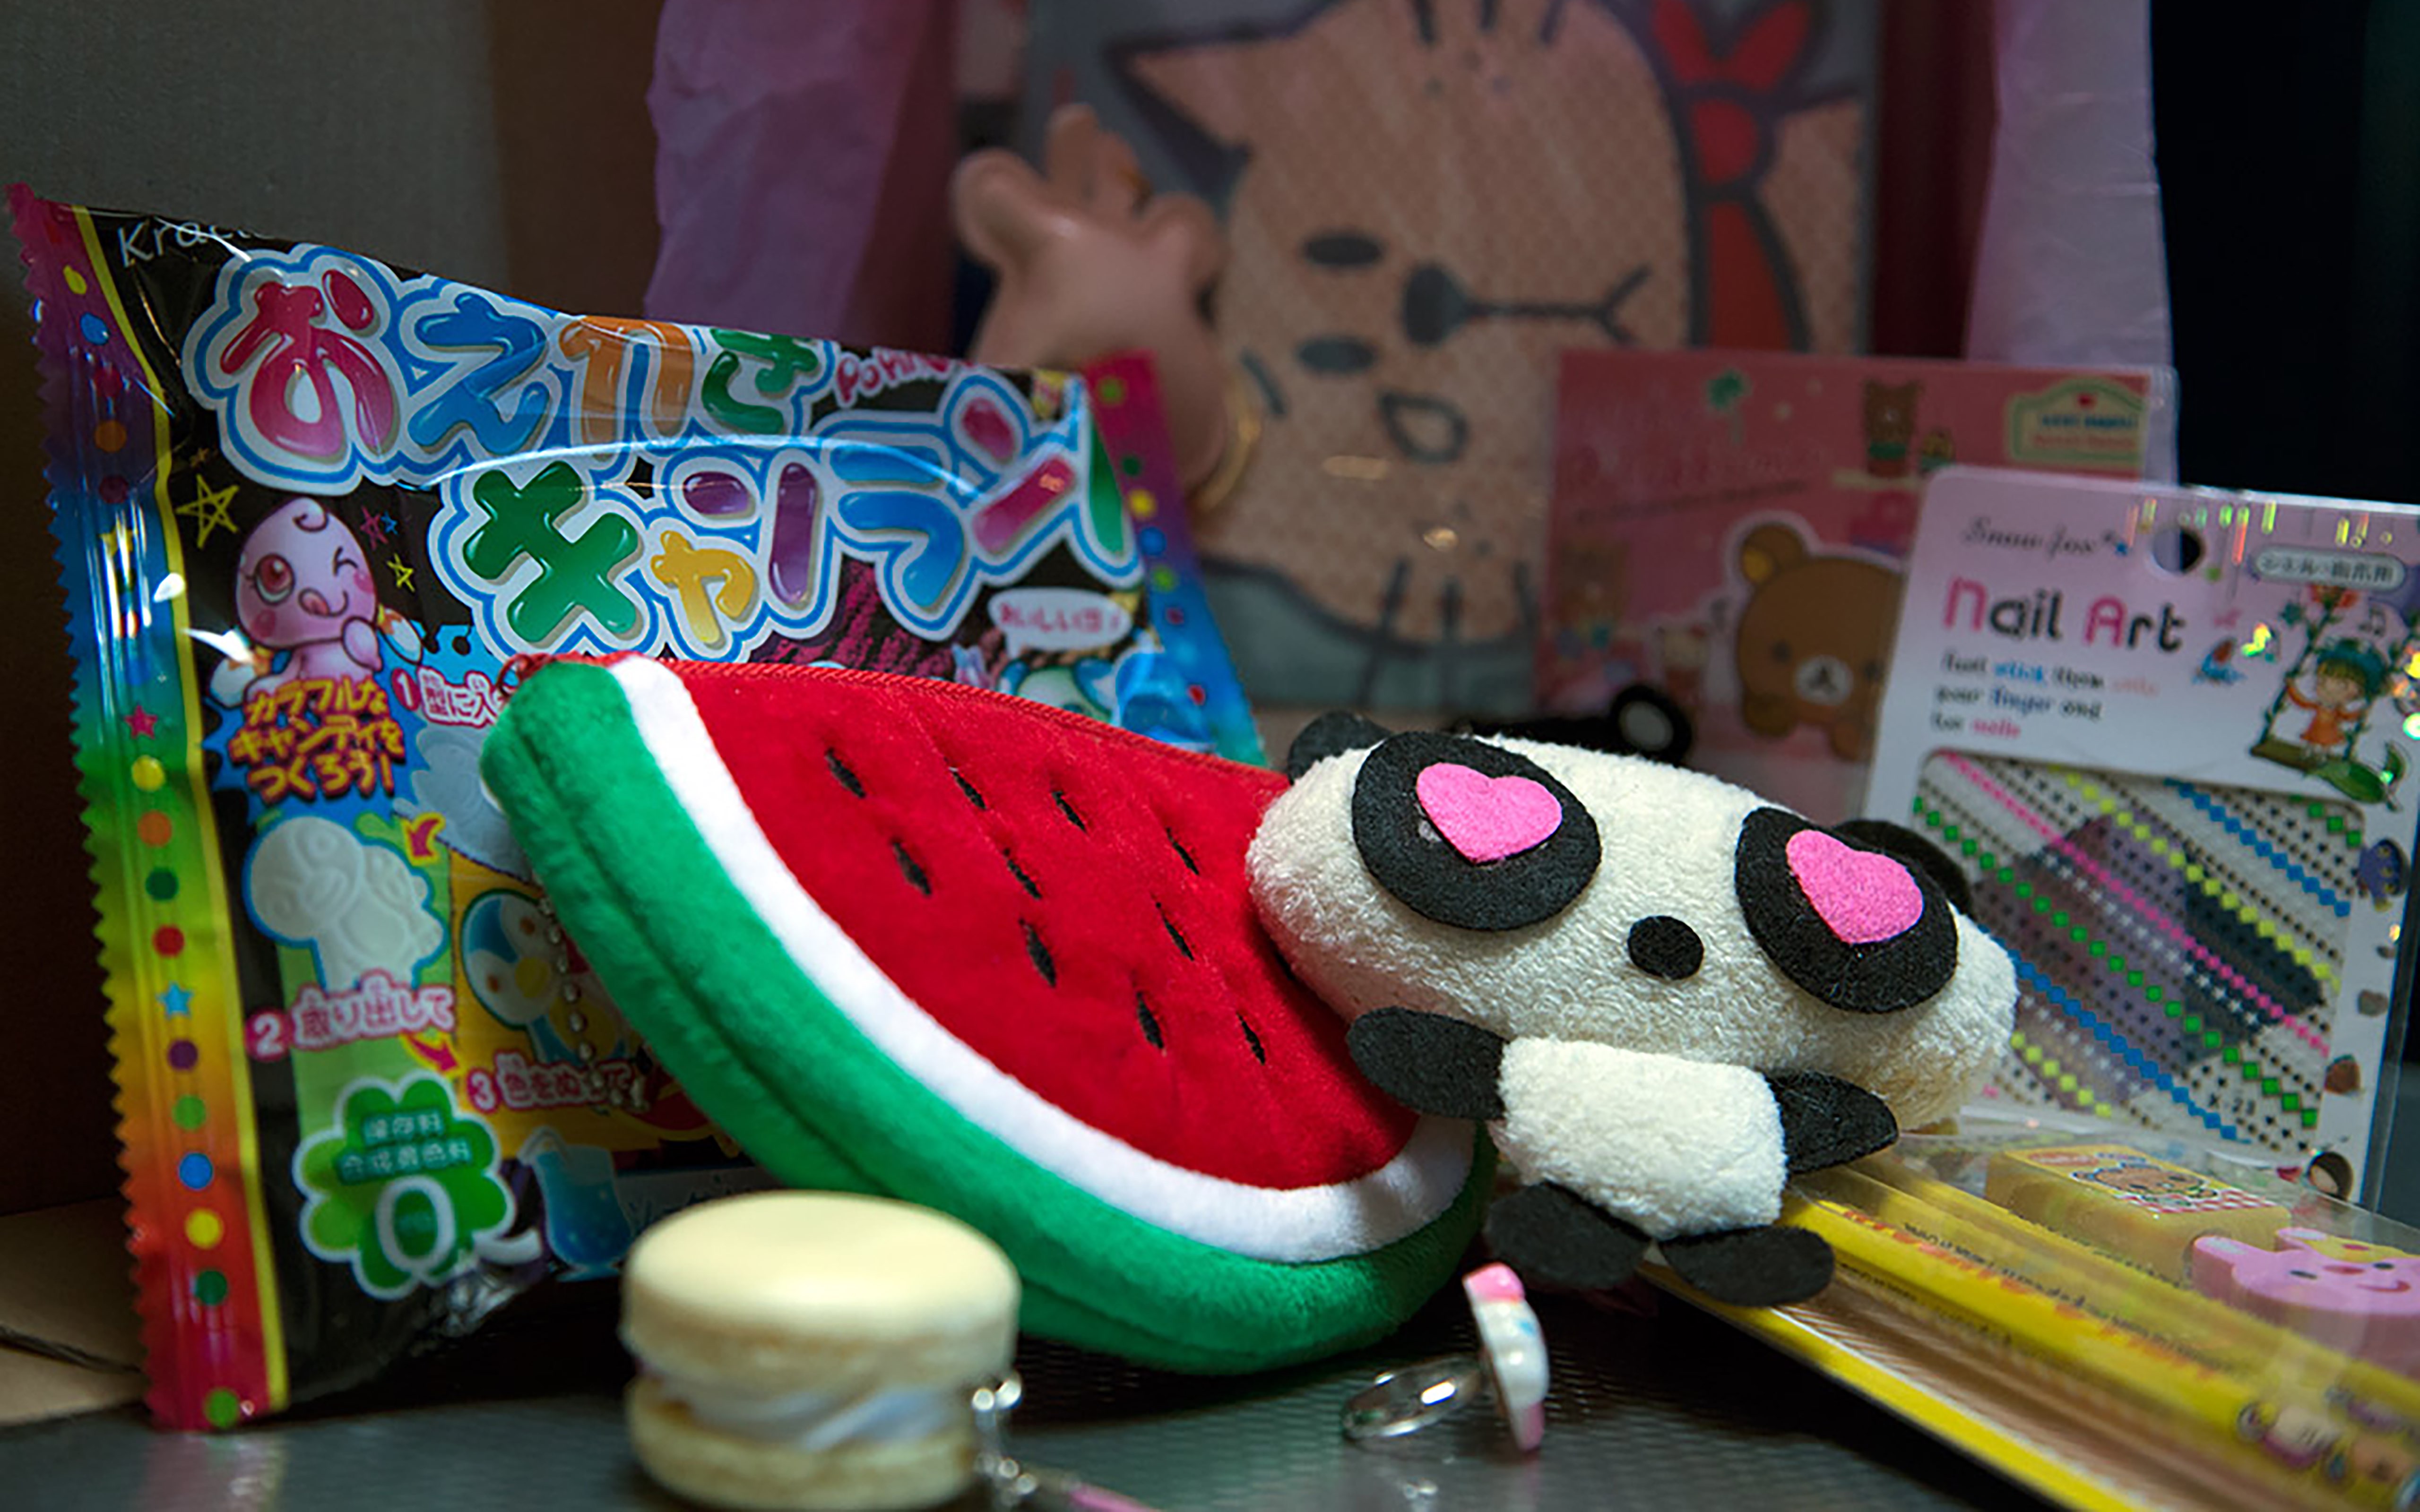 Kawaii Squishies & Toys – Kawaii Box